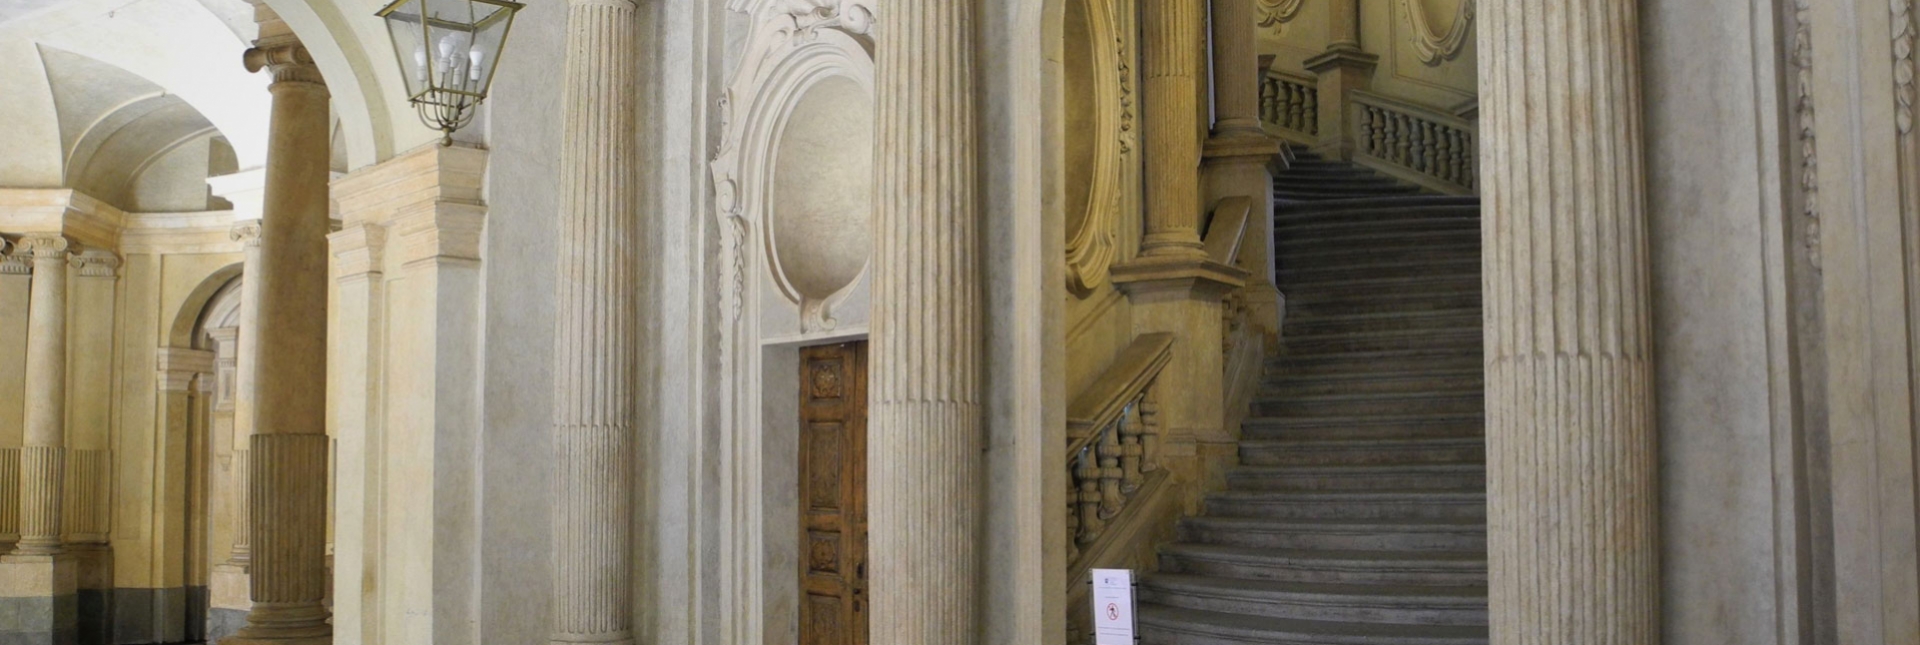 Palazzo Carignano, vestibolo, particolare dello scalone d'onore, a mezzanotte (Direzione regionale Musei Piemonte).